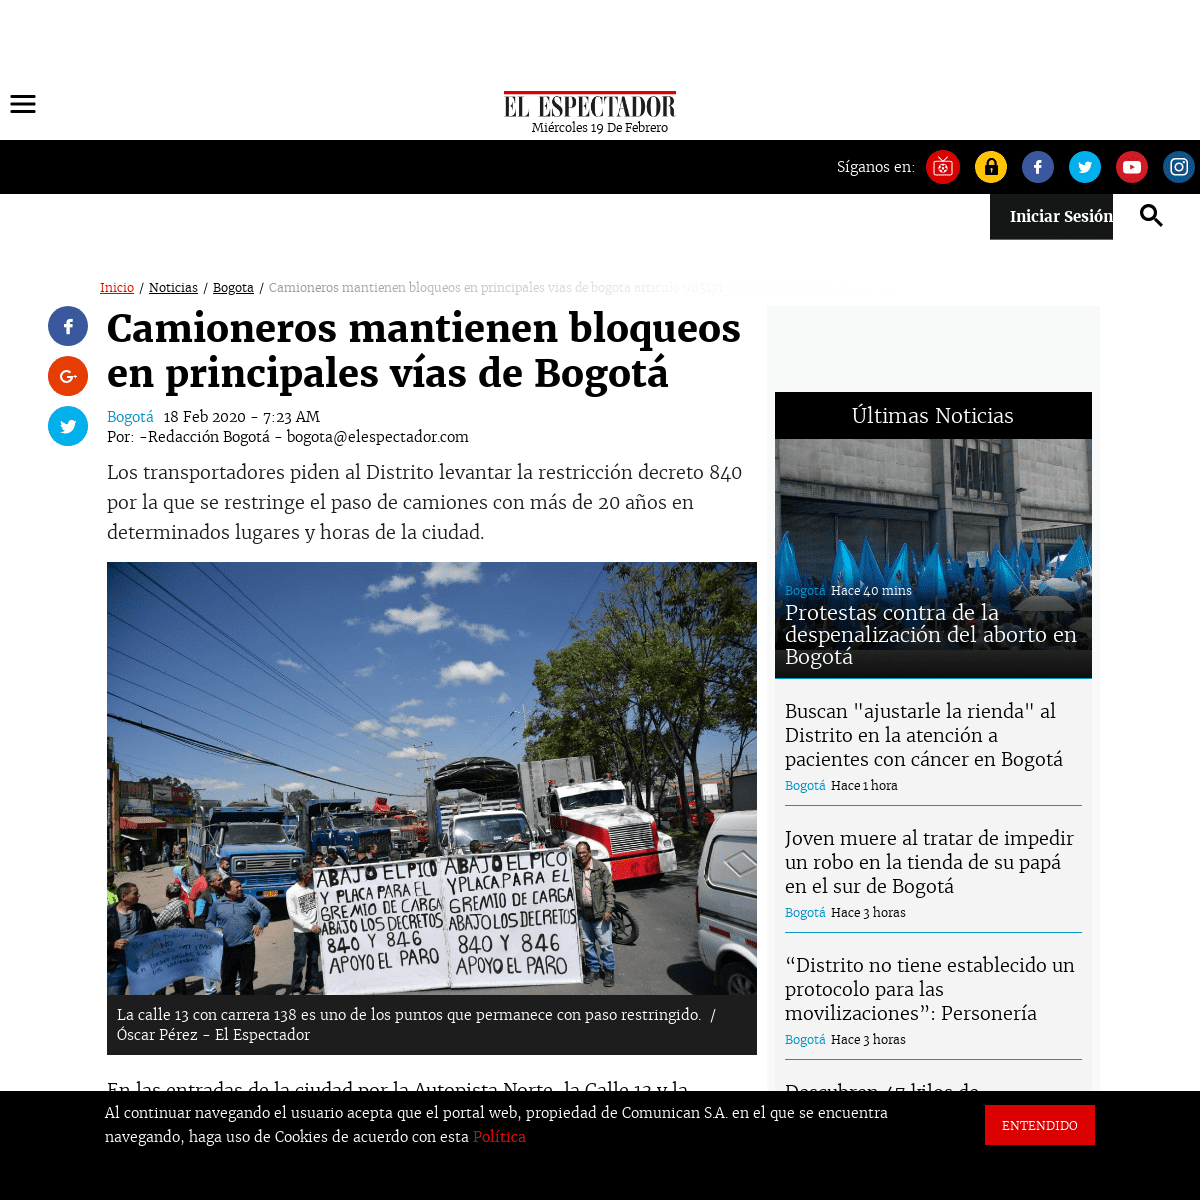 A complete backup of www.elespectador.com/noticias/bogota/camioneros-mantienen-bloqueos-en-principales-vias-de-bogota-articulo-9